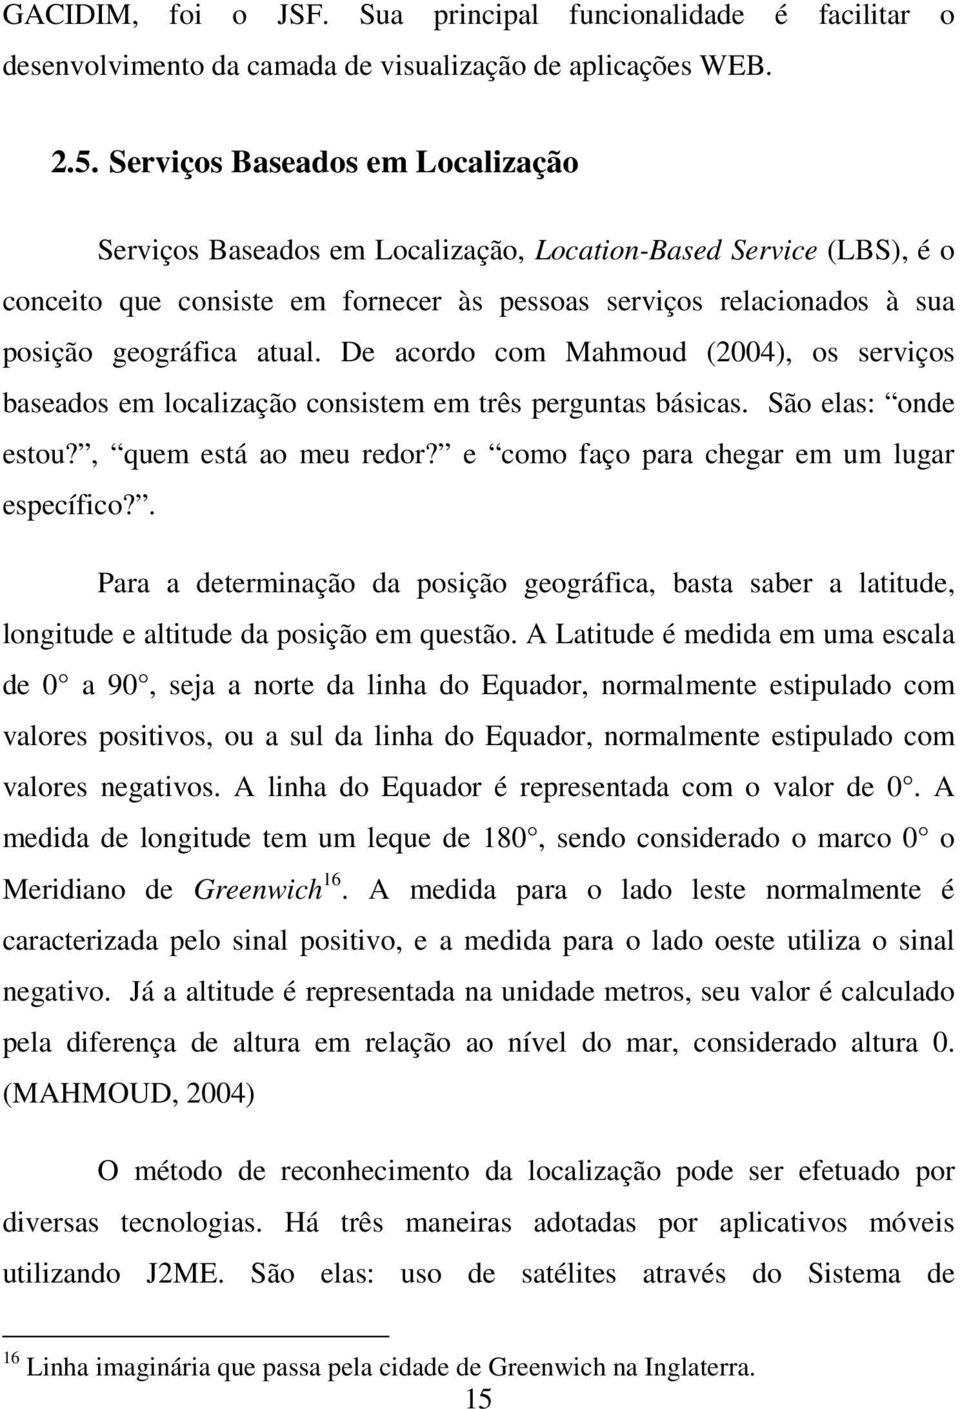 De acordo com Mahmoud (2004), os serviços baseados em localização consistem em três perguntas básicas. São elas: onde estou?, quem está ao meu redor? e como faço para chegar em um lugar específico?